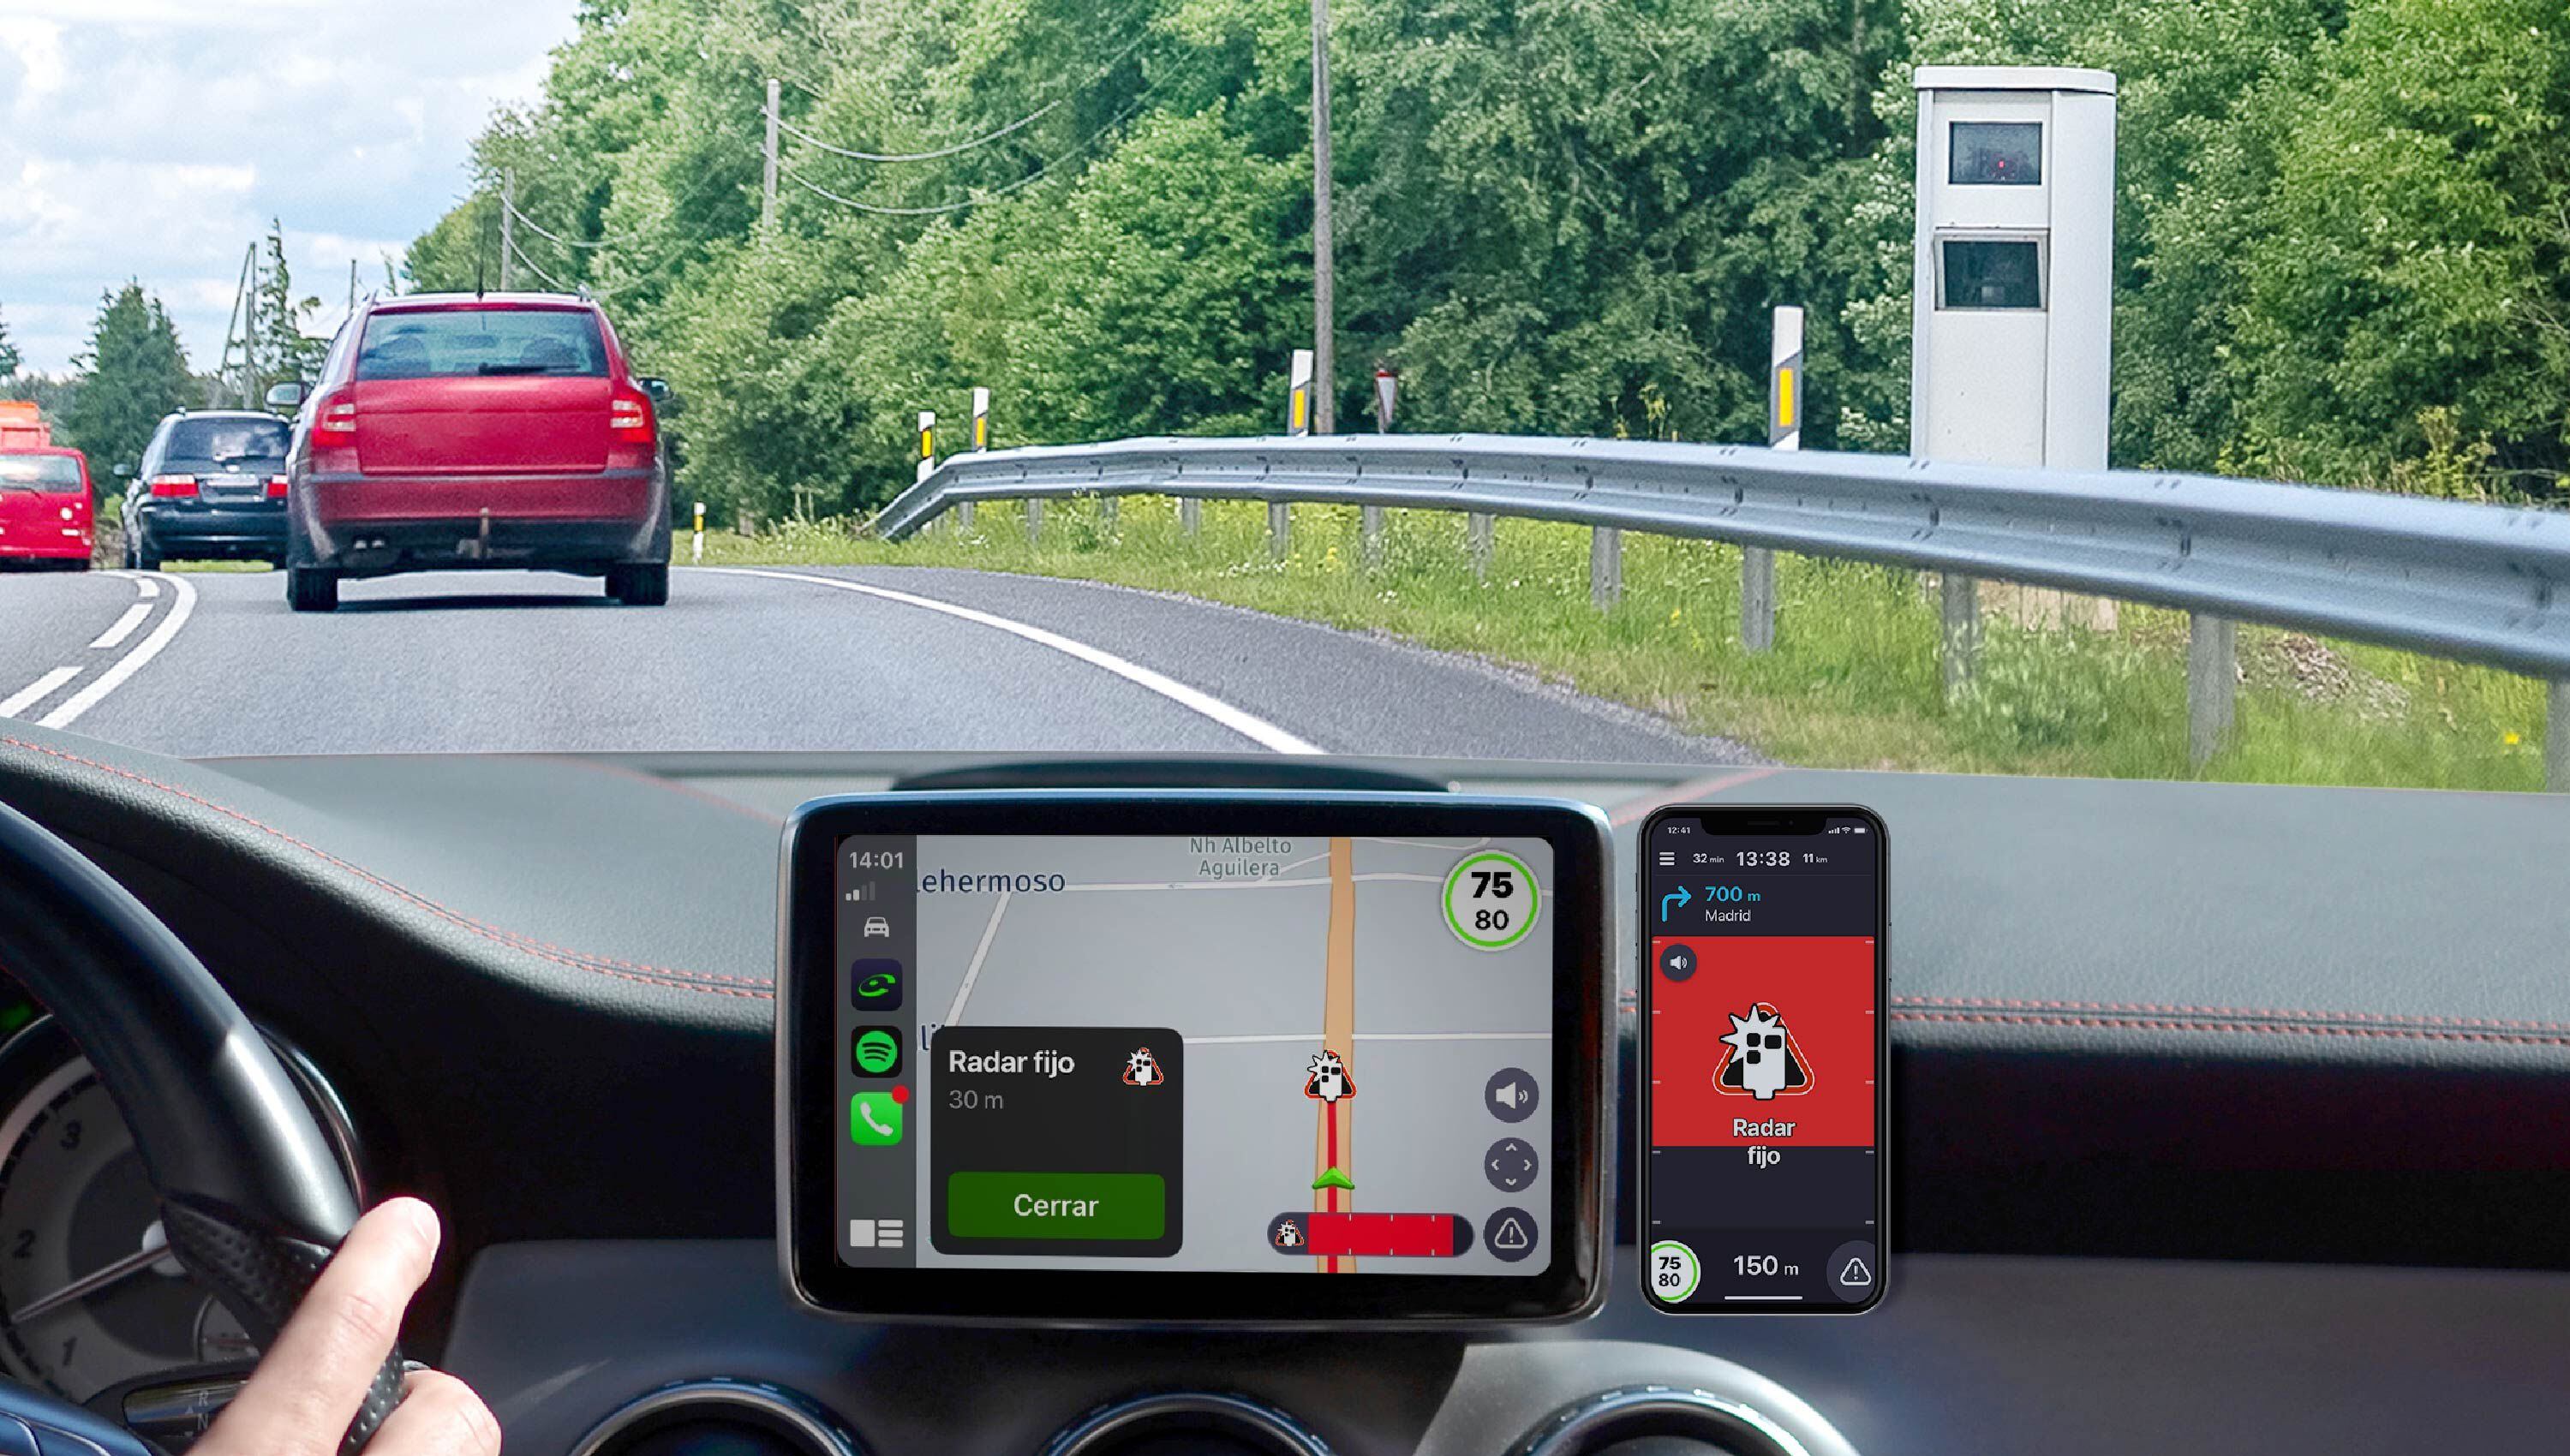 Gracias al modo integrado, con la modalidad Premium se visualiza la navegación GPS en la pantalla del vehículo. Aparecen las alertas y notificaciones, con una interfaz sencilla y sin publicidad.